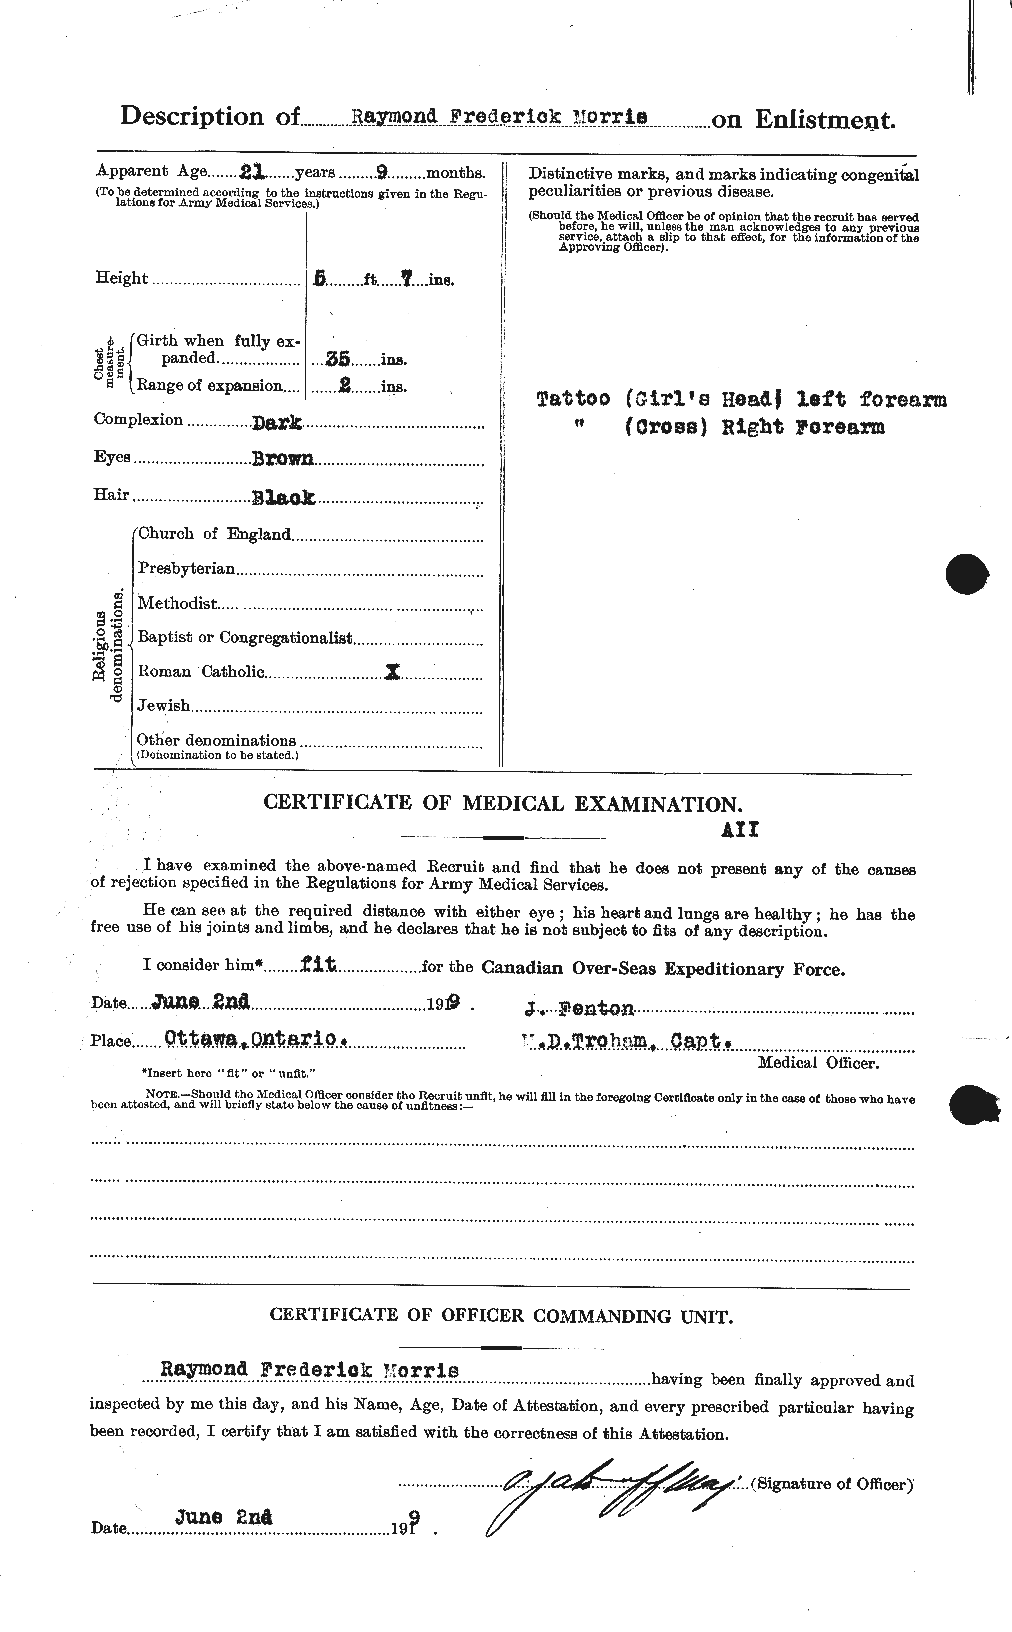 Dossiers du Personnel de la Première Guerre mondiale - CEC 508627b